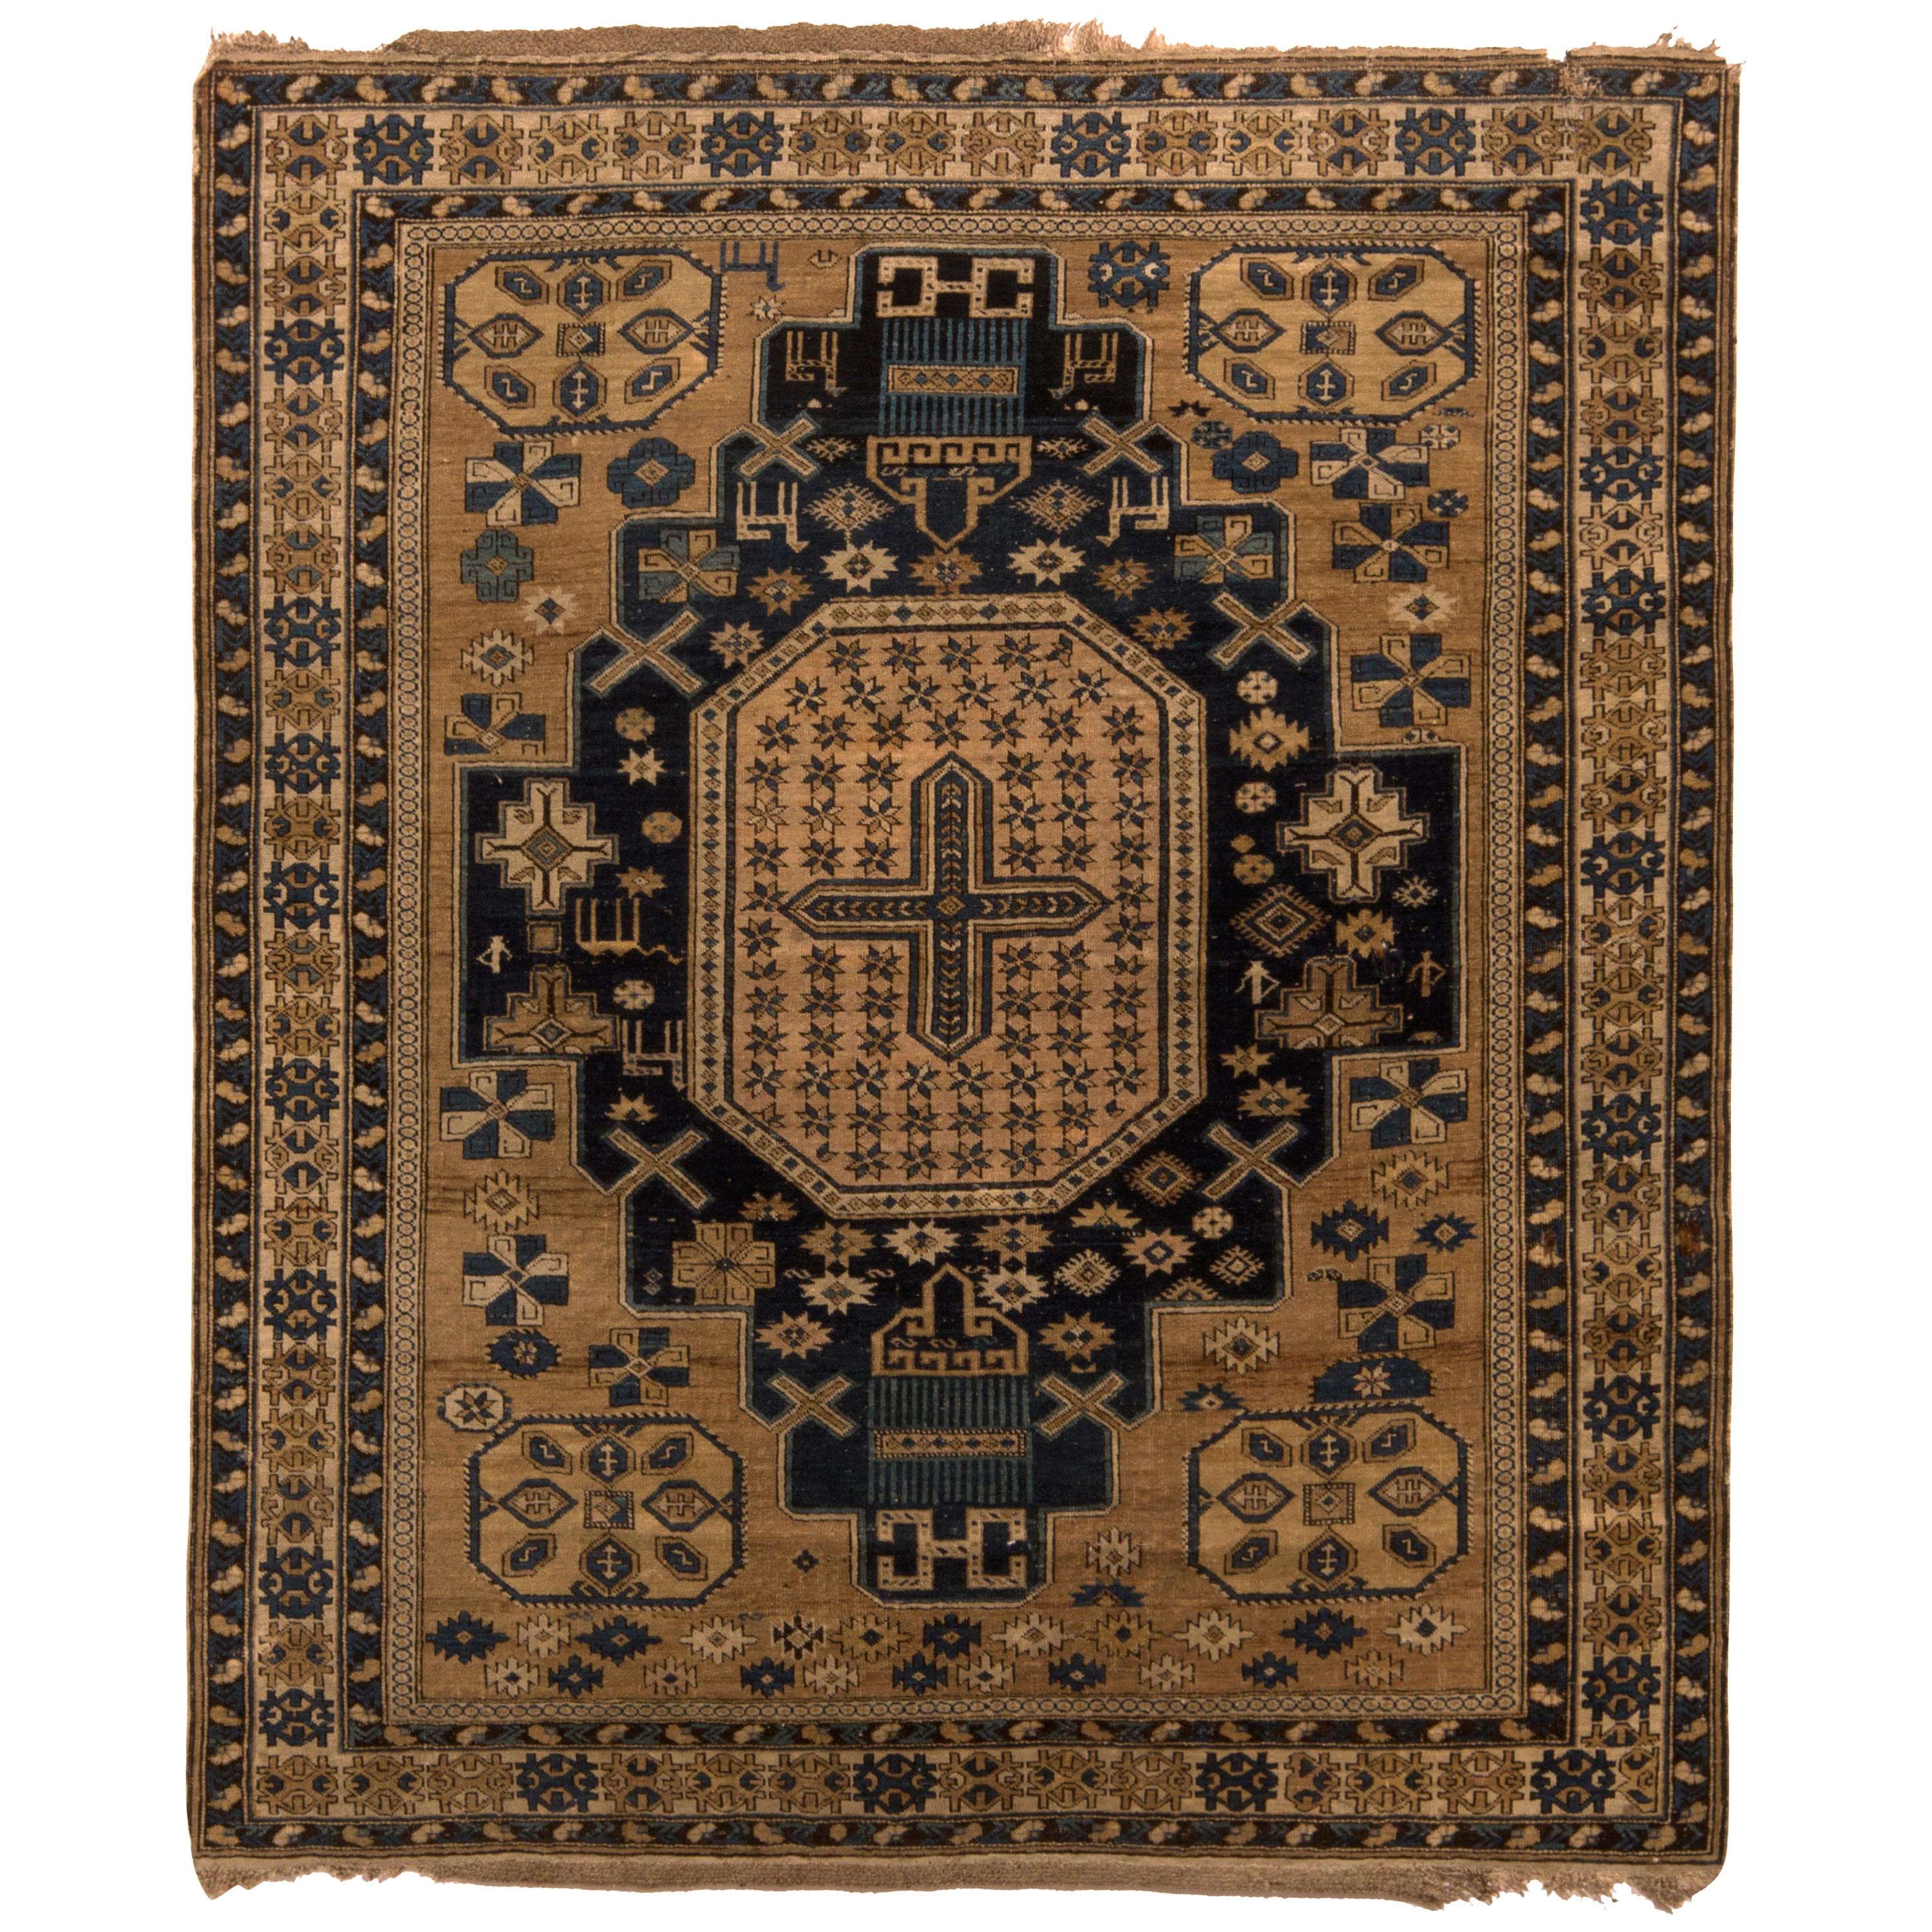 Tapis Kuba ancien beige-marron or et bleu à motif médaillon de style tapis & Kilim